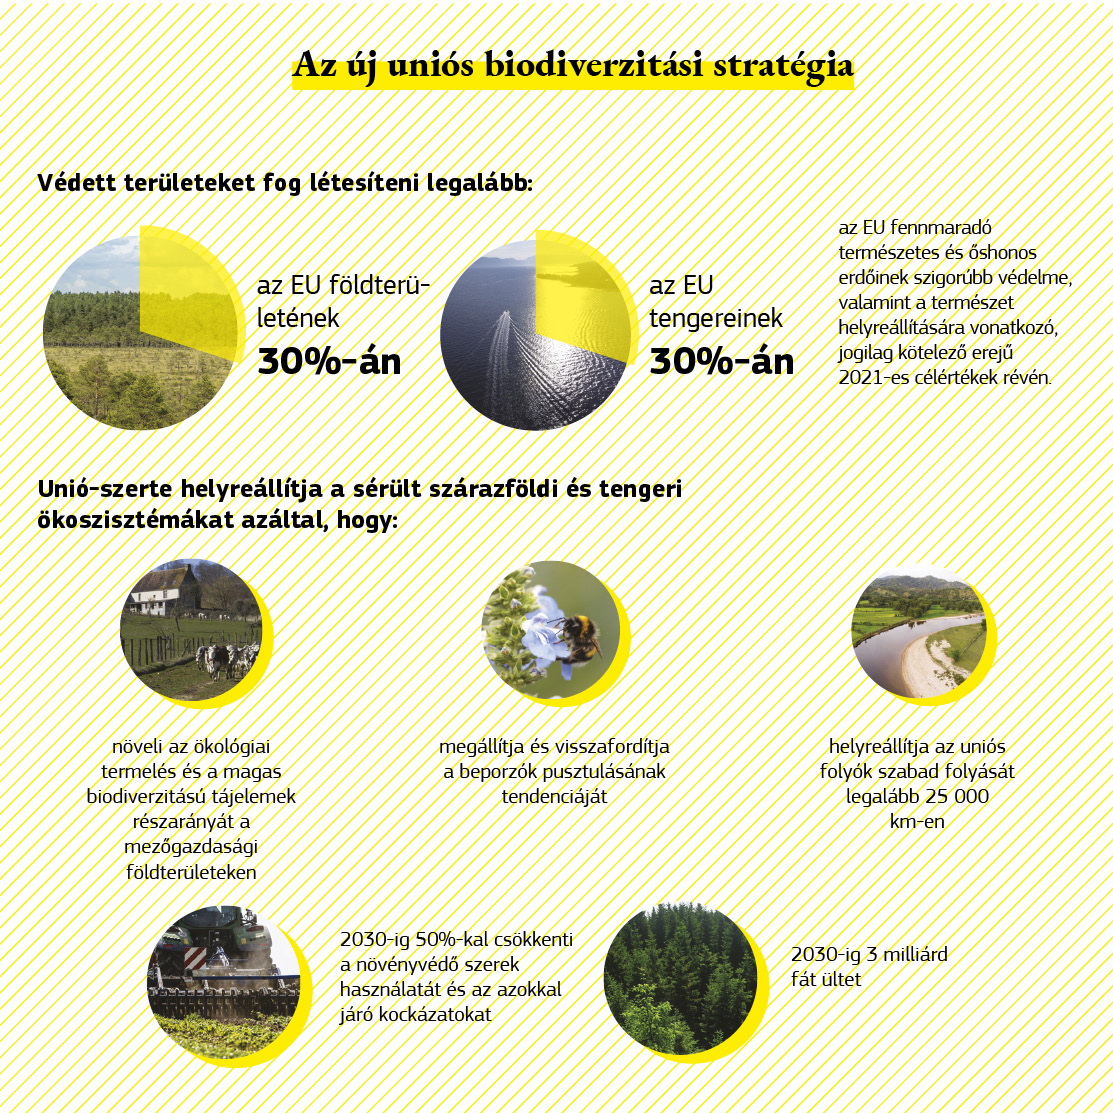 A biodiverzitási stratégia célkitűzéseit bemutató infografika.